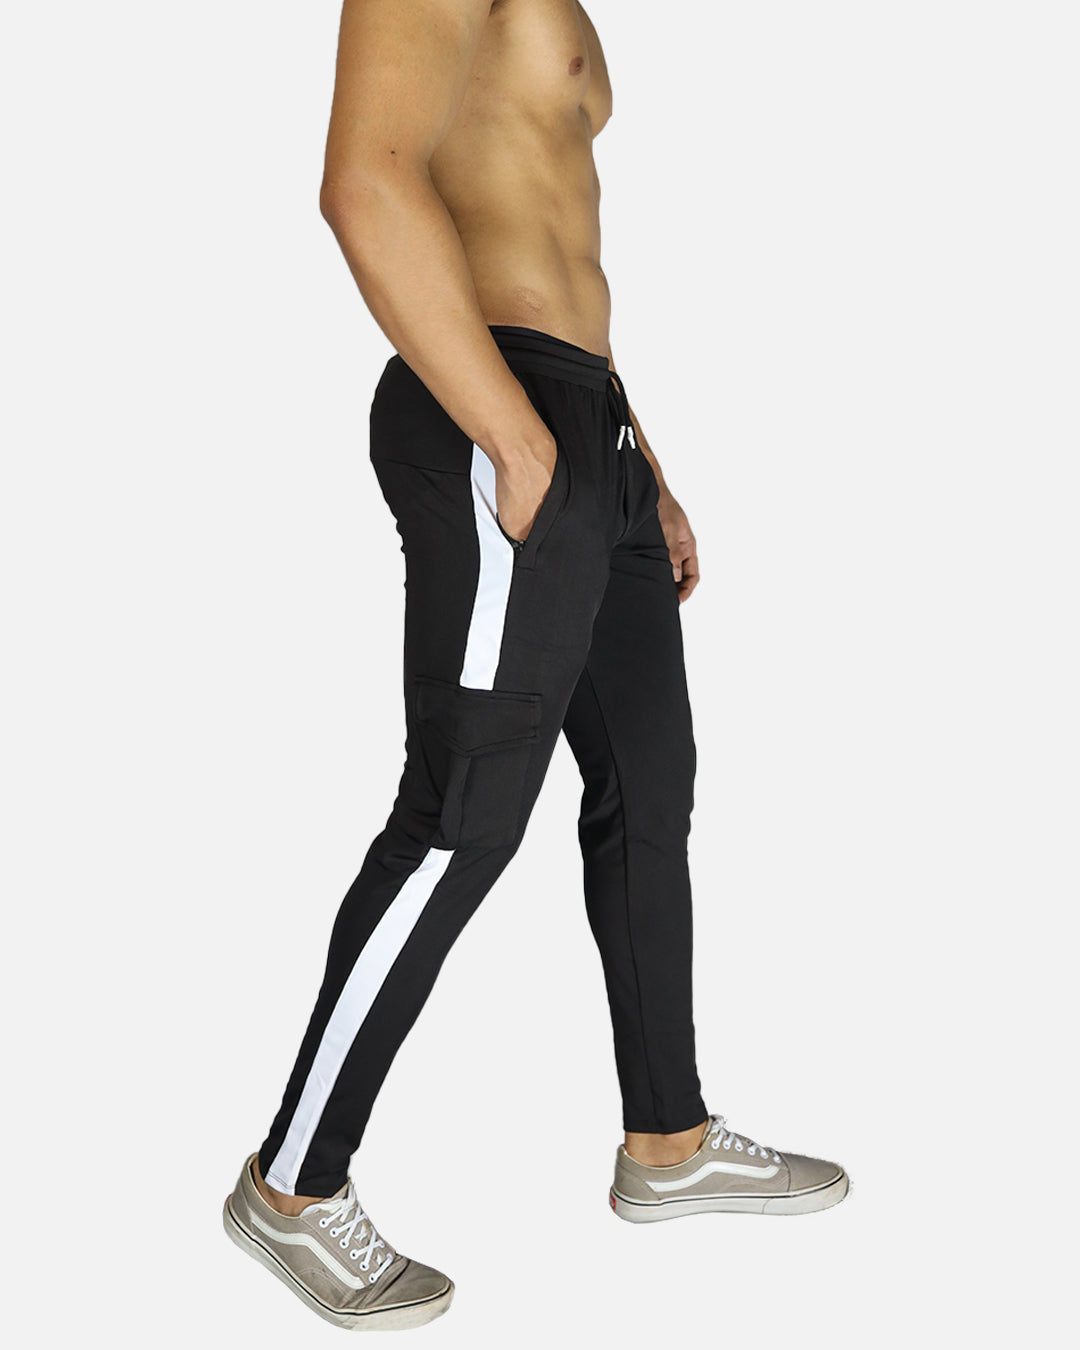 Nike Dry Phenom Running Pant Men's Workout  Nike clothes mens, Mens running  pants, Track pants mens